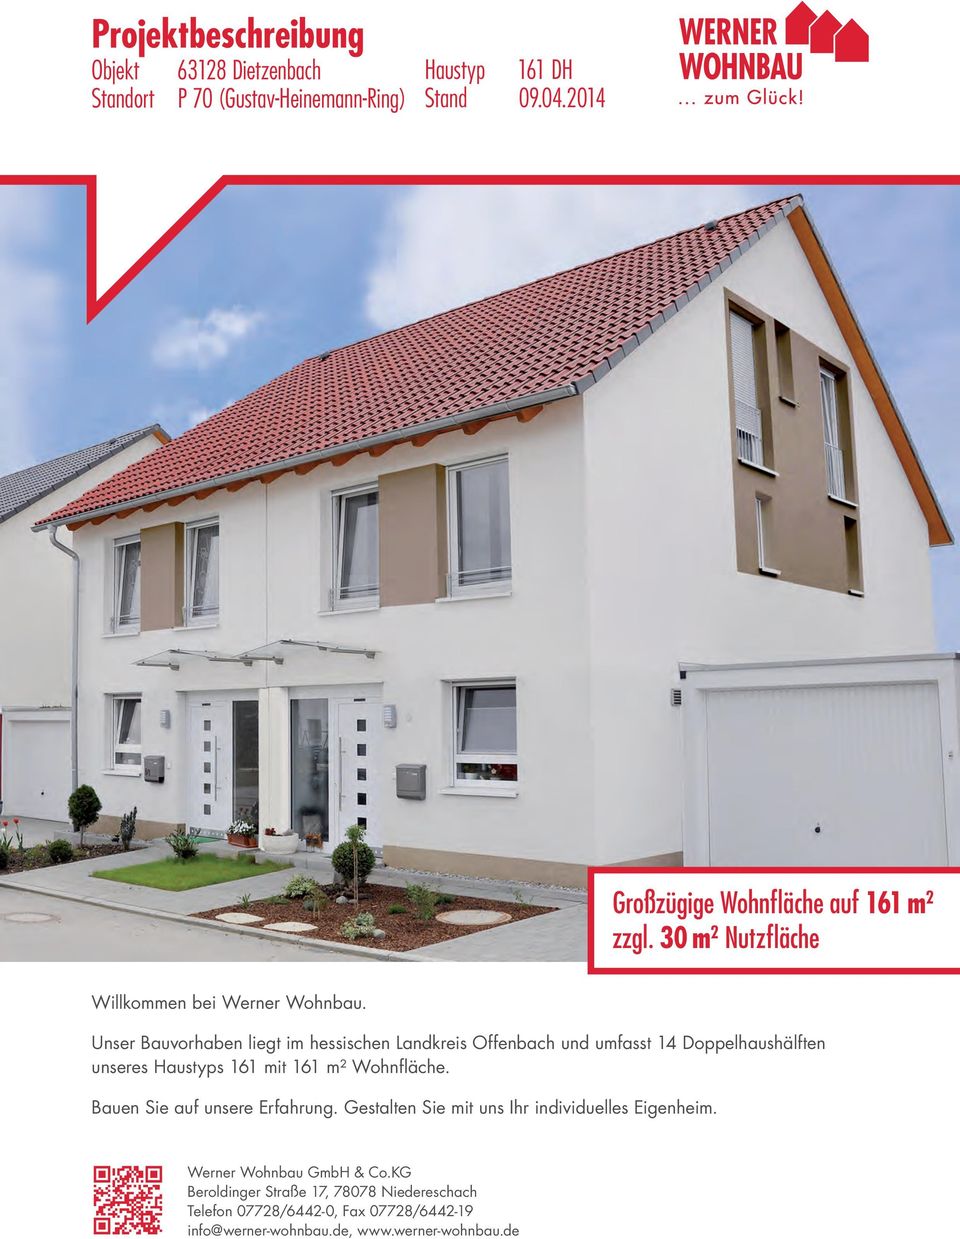 Unser Bauvorhaben liegt im hessischen Landkreis Offenbach und umfasst 14 Doppelhaushälften unseres Haustyps 161 mit 161 m² Wohnfläche.